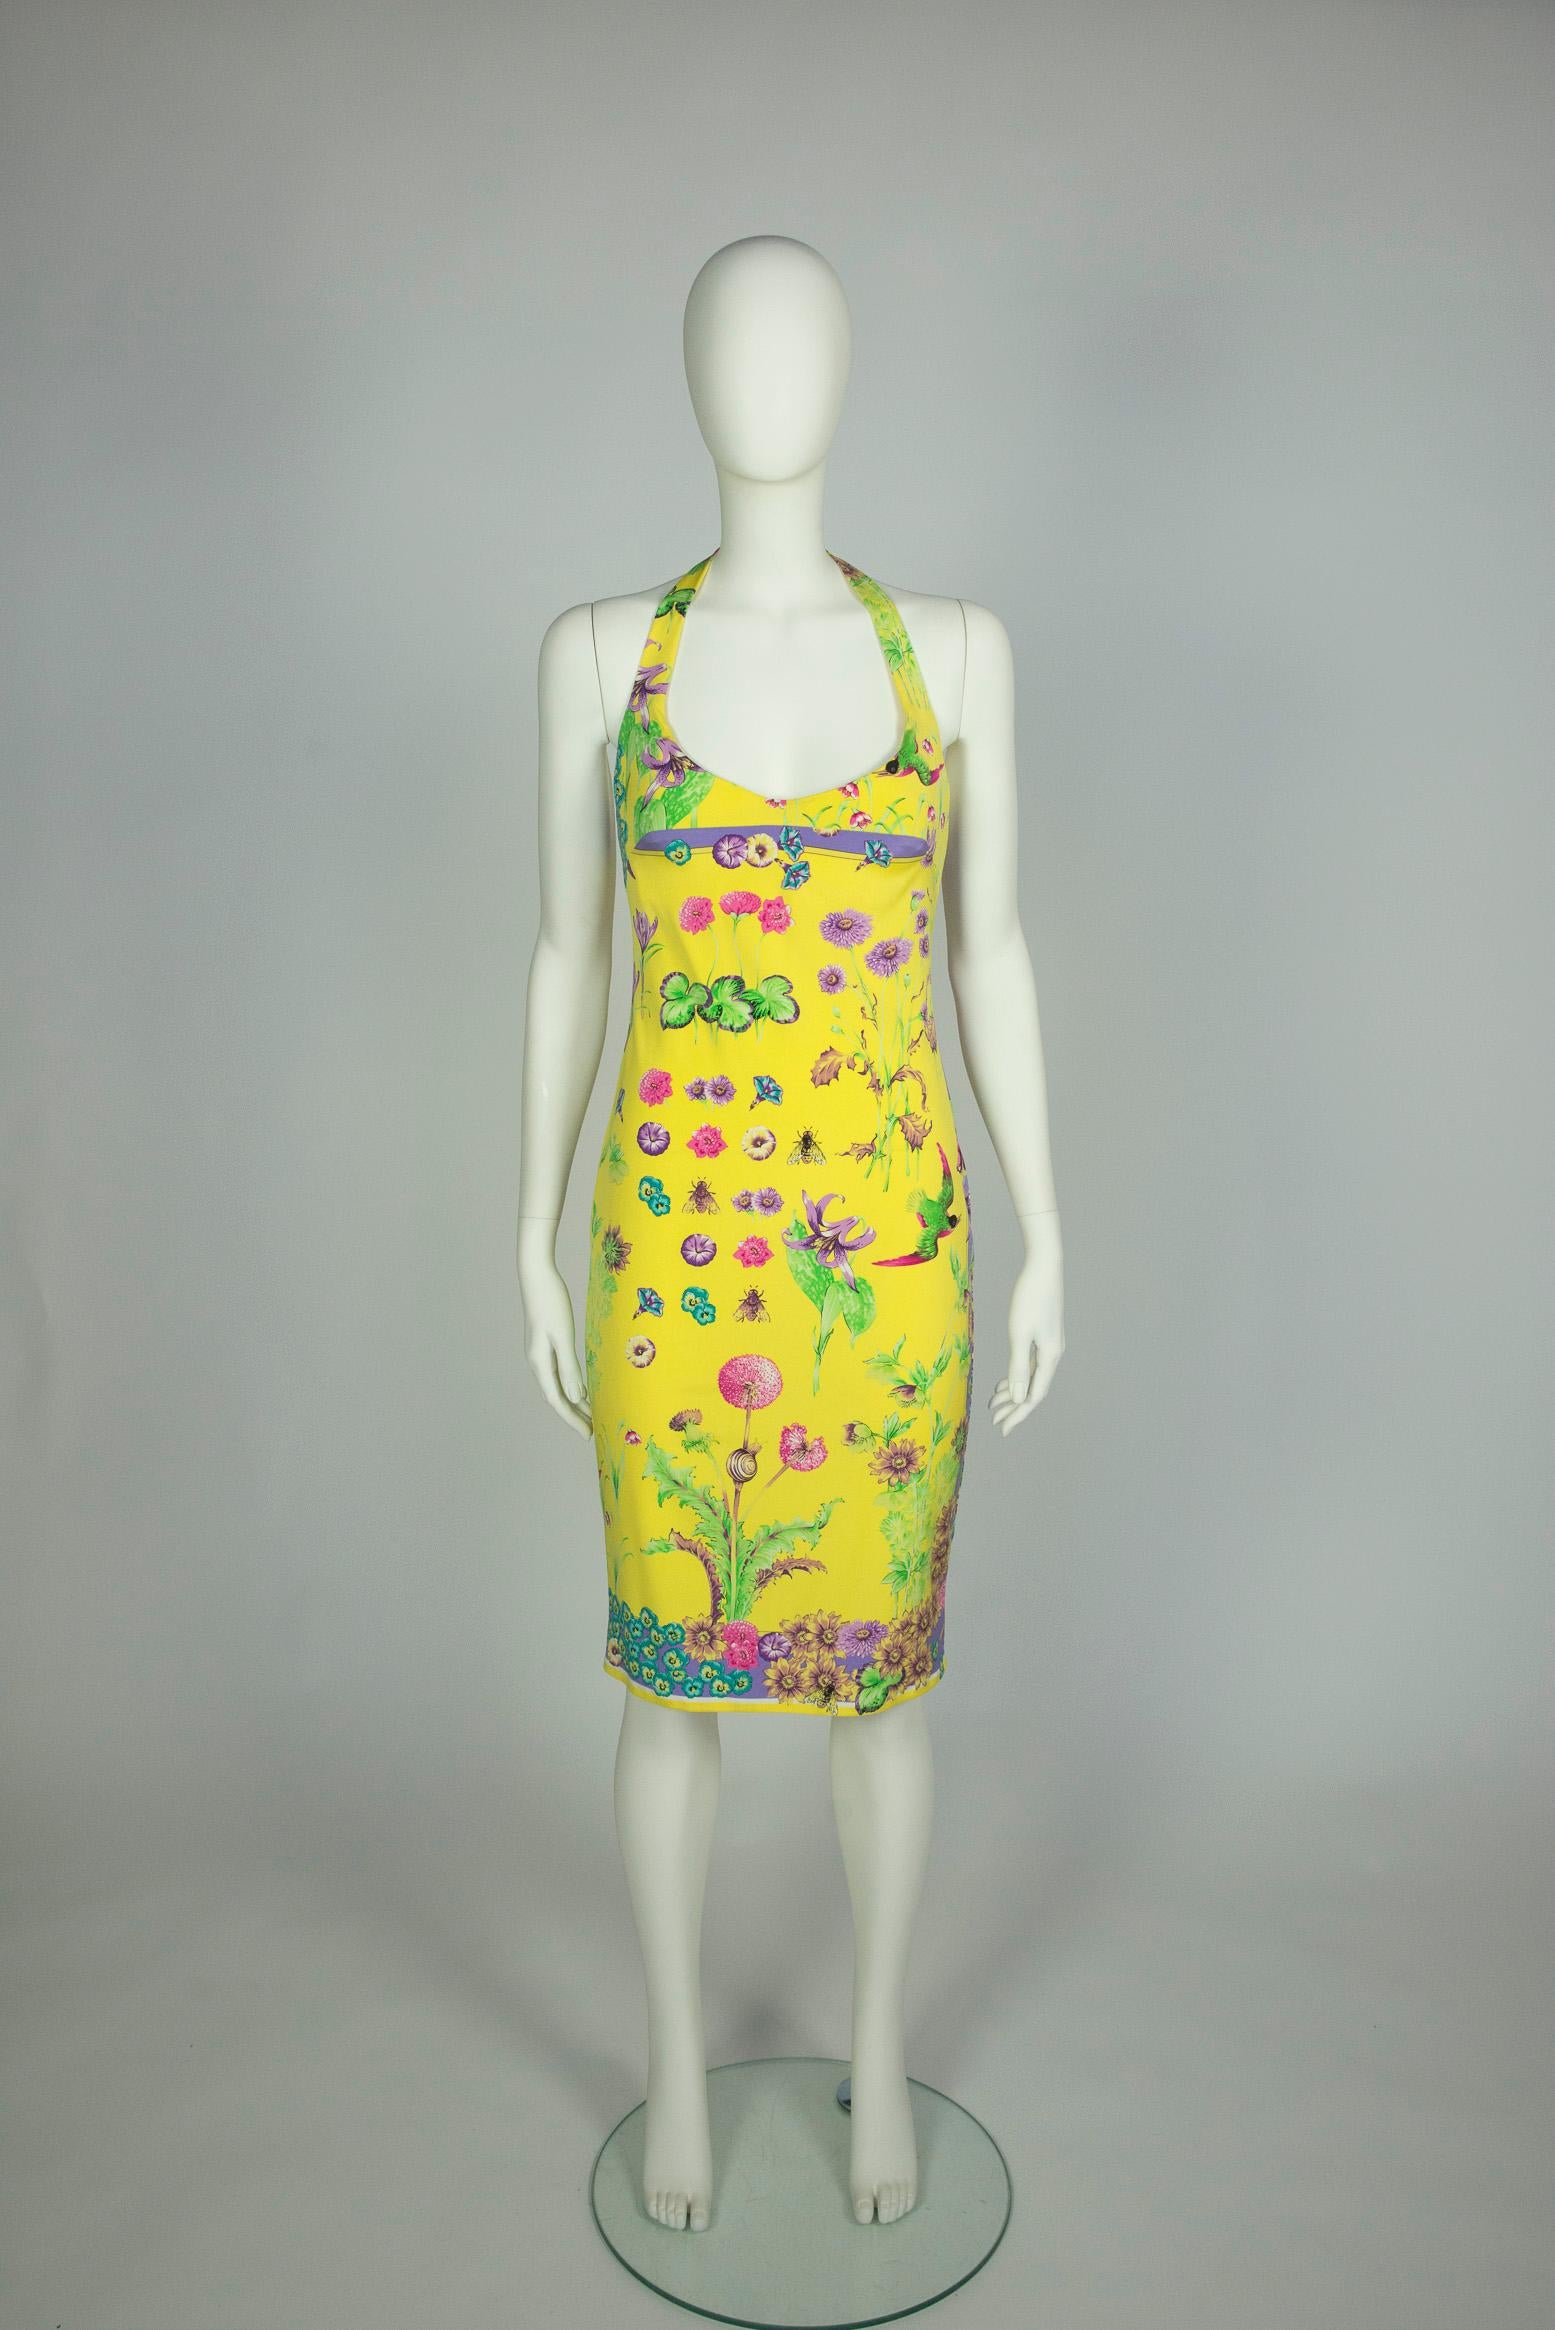 Parfaite pour les occasions estivales, cette robe de couture de Gianni Versace est probablement issue de sa collection printemps-été 1995 ou 1996. Coupée dans un crêpe (de soie ?) (l'étiquette de composition est manquante) et de style dos nu, la